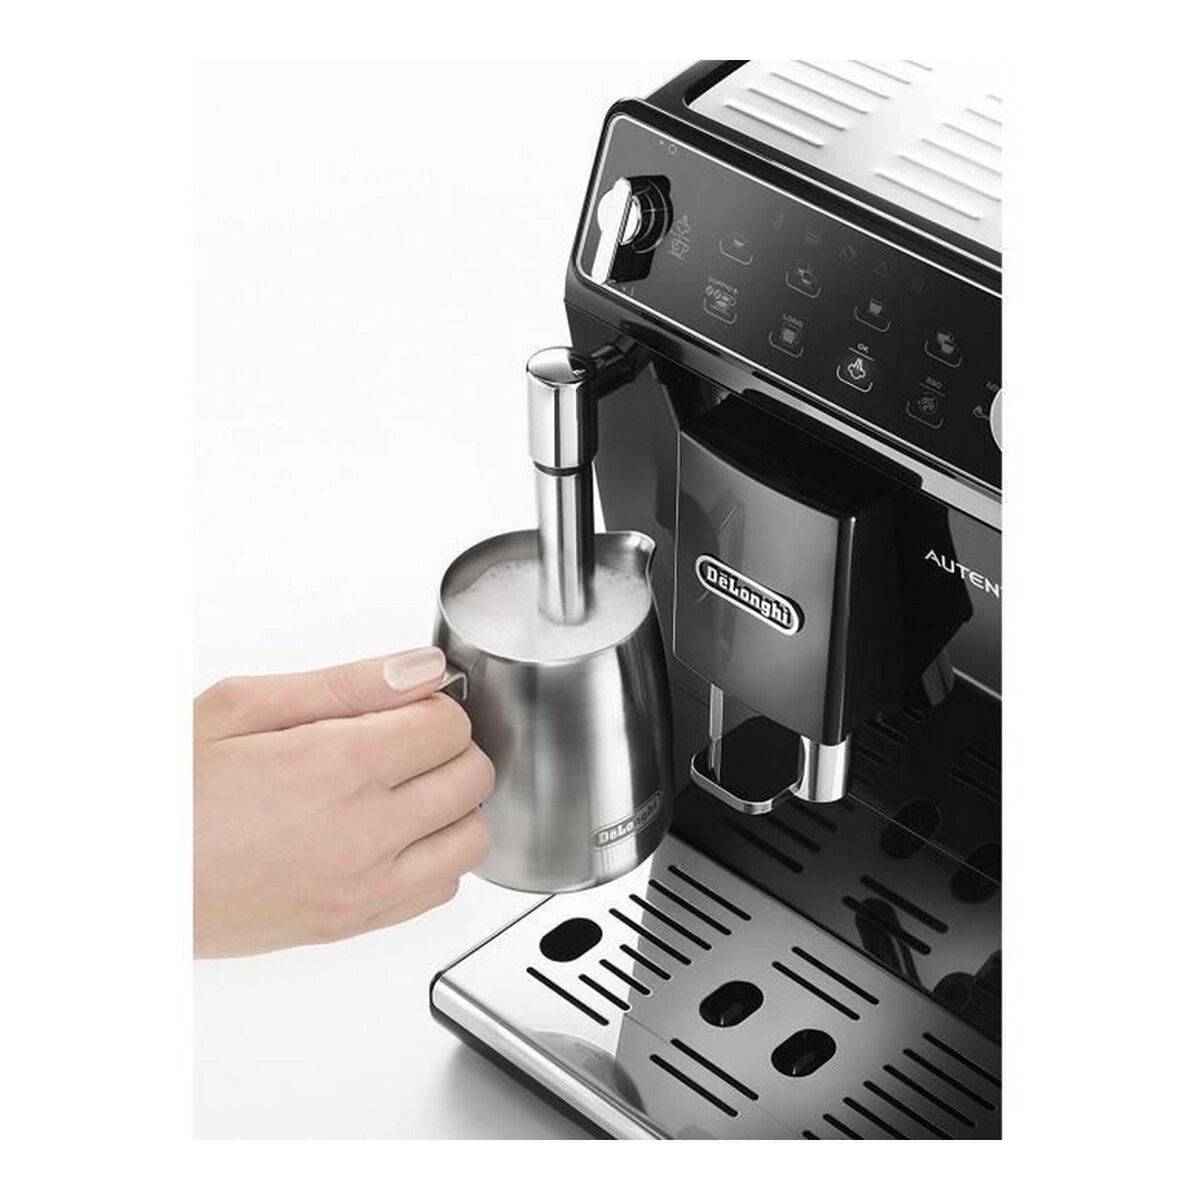 Superautomatisch koffiezetapparaat DeLonghi ETAM29.510.B Zwart 1450 W